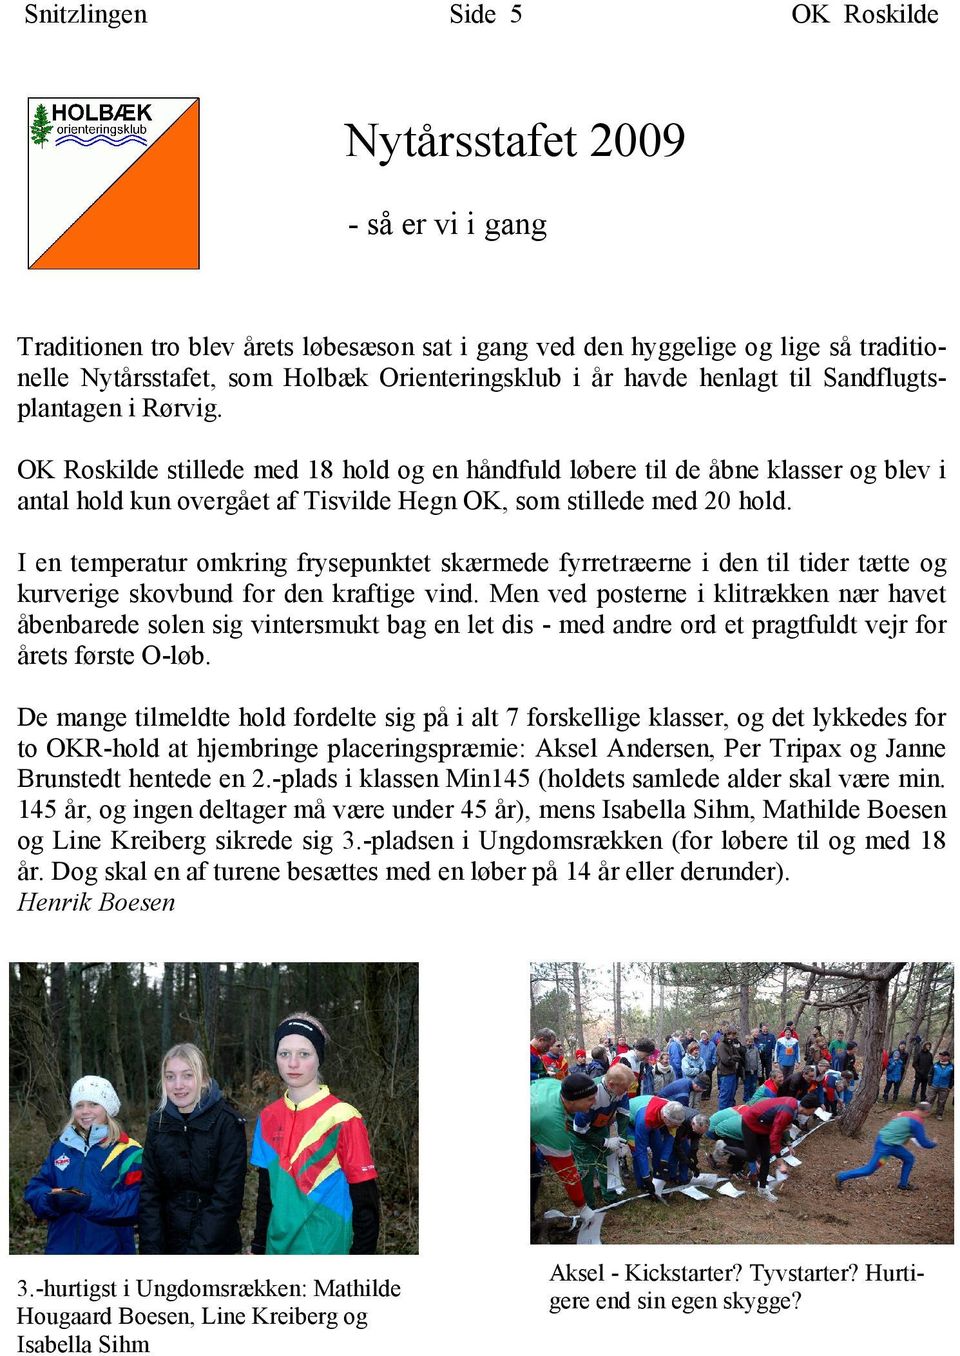 OK Roskilde stillede med 18 hold og en håndfuld løbere til de åbne klasser og blev i antal hold kun overgået af Tisvilde Hegn OK, som stillede med 20 hold.